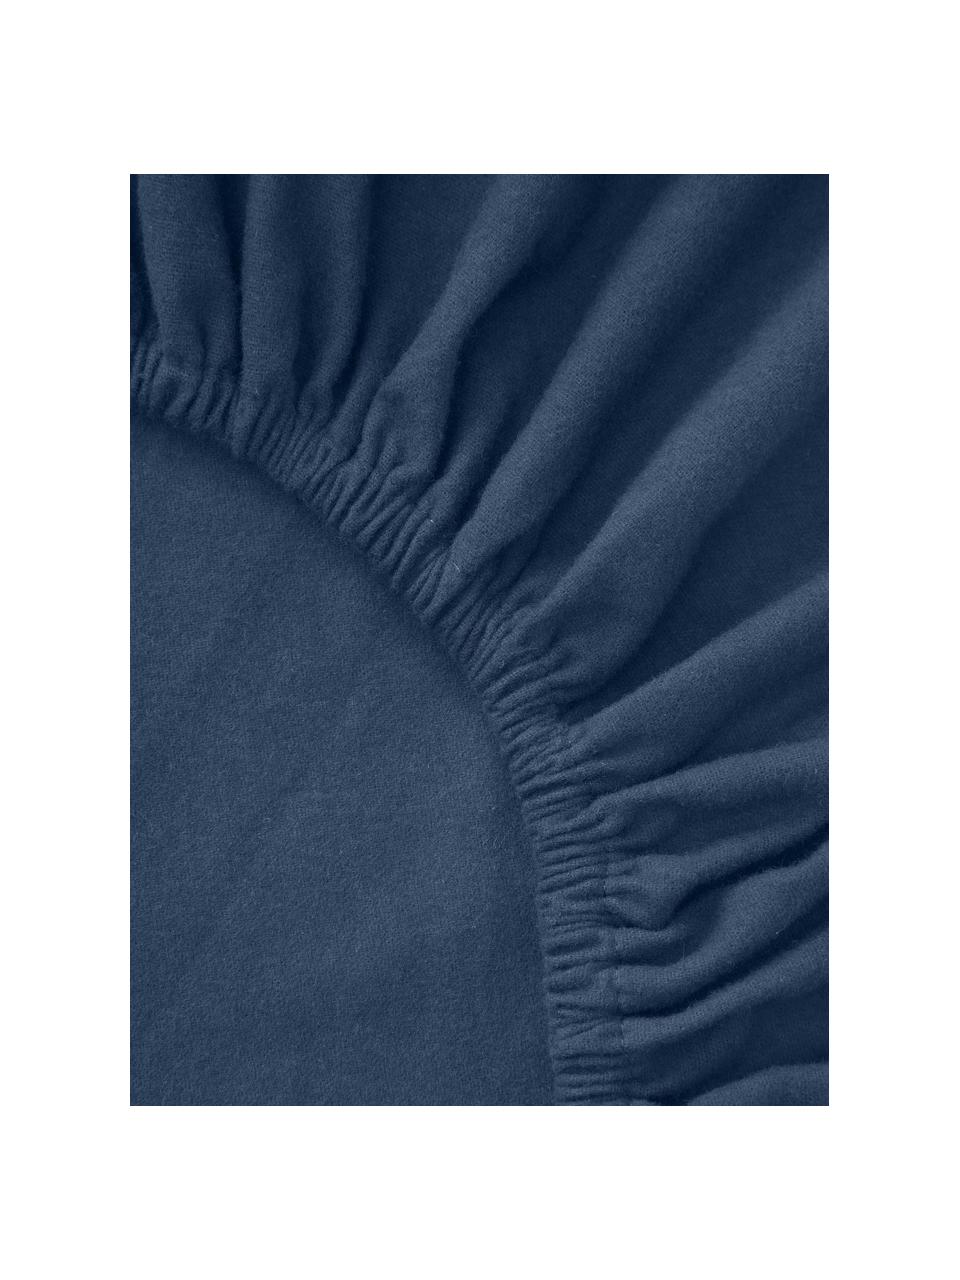 Sábana bajera cubrecolchón de franela Biba, Azul oscuro, Cama 200 cm (200 x 200 x 15 cm)